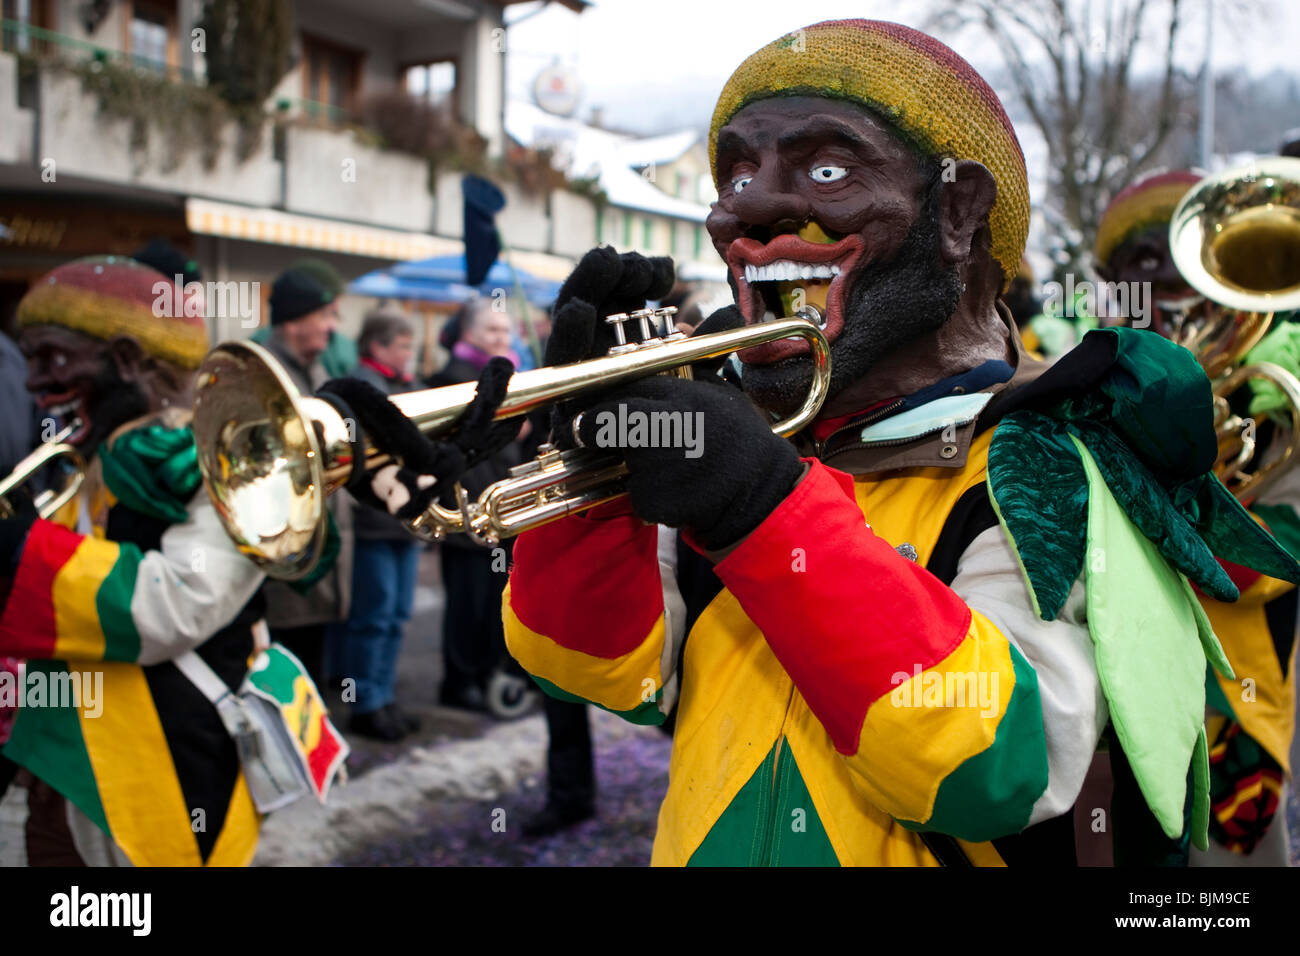 Groupe Moosschraenzer Guggenmusig habillé au thème de la Jamaïque pendant le carnaval procession à Malters, Lucerne, Suisse Banque D'Images